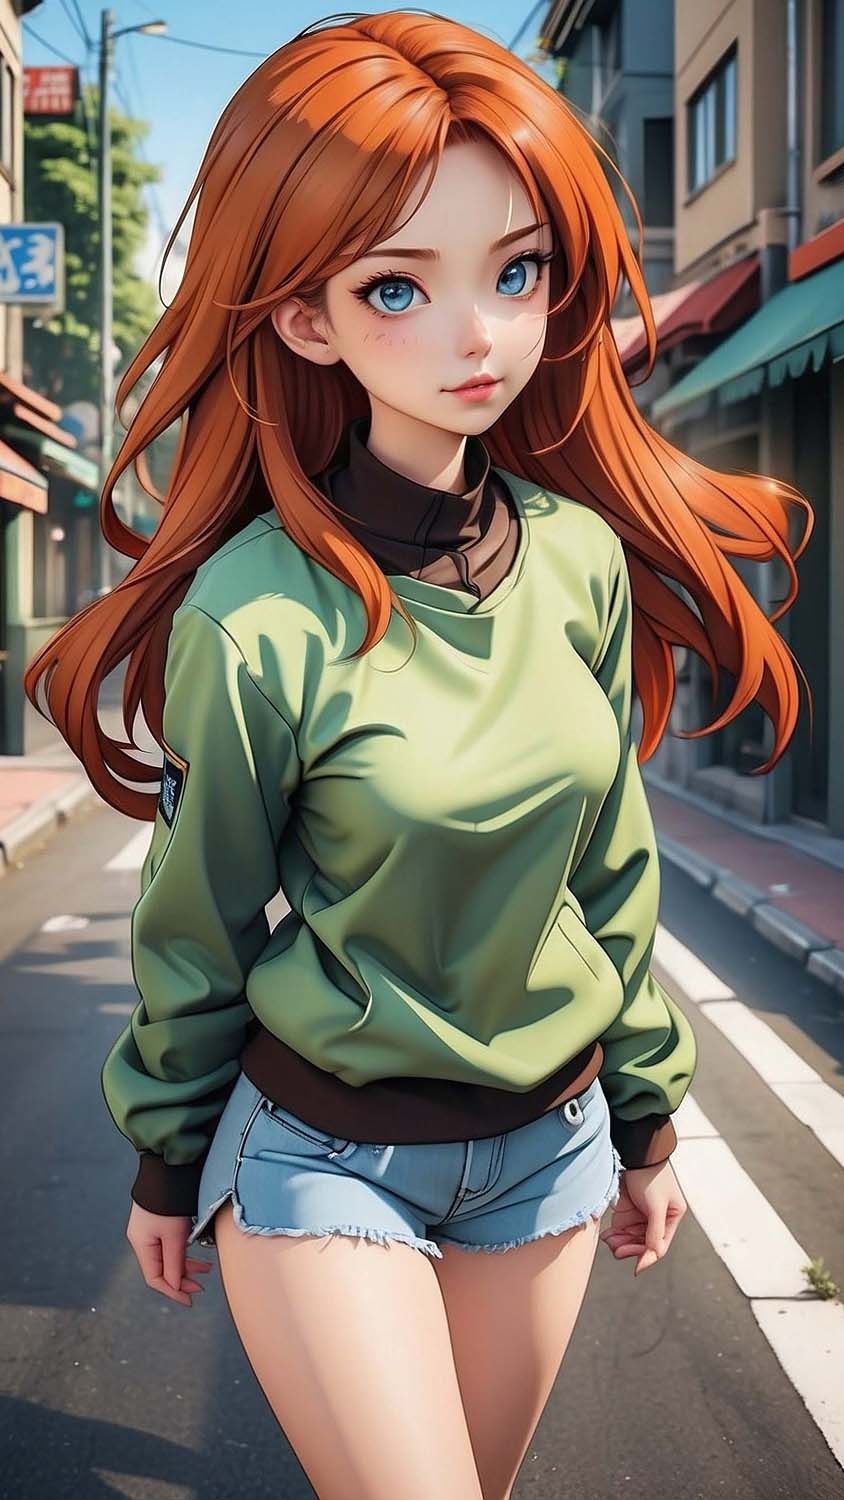 Redhead Girl Anime iPhone Wallpaper HD